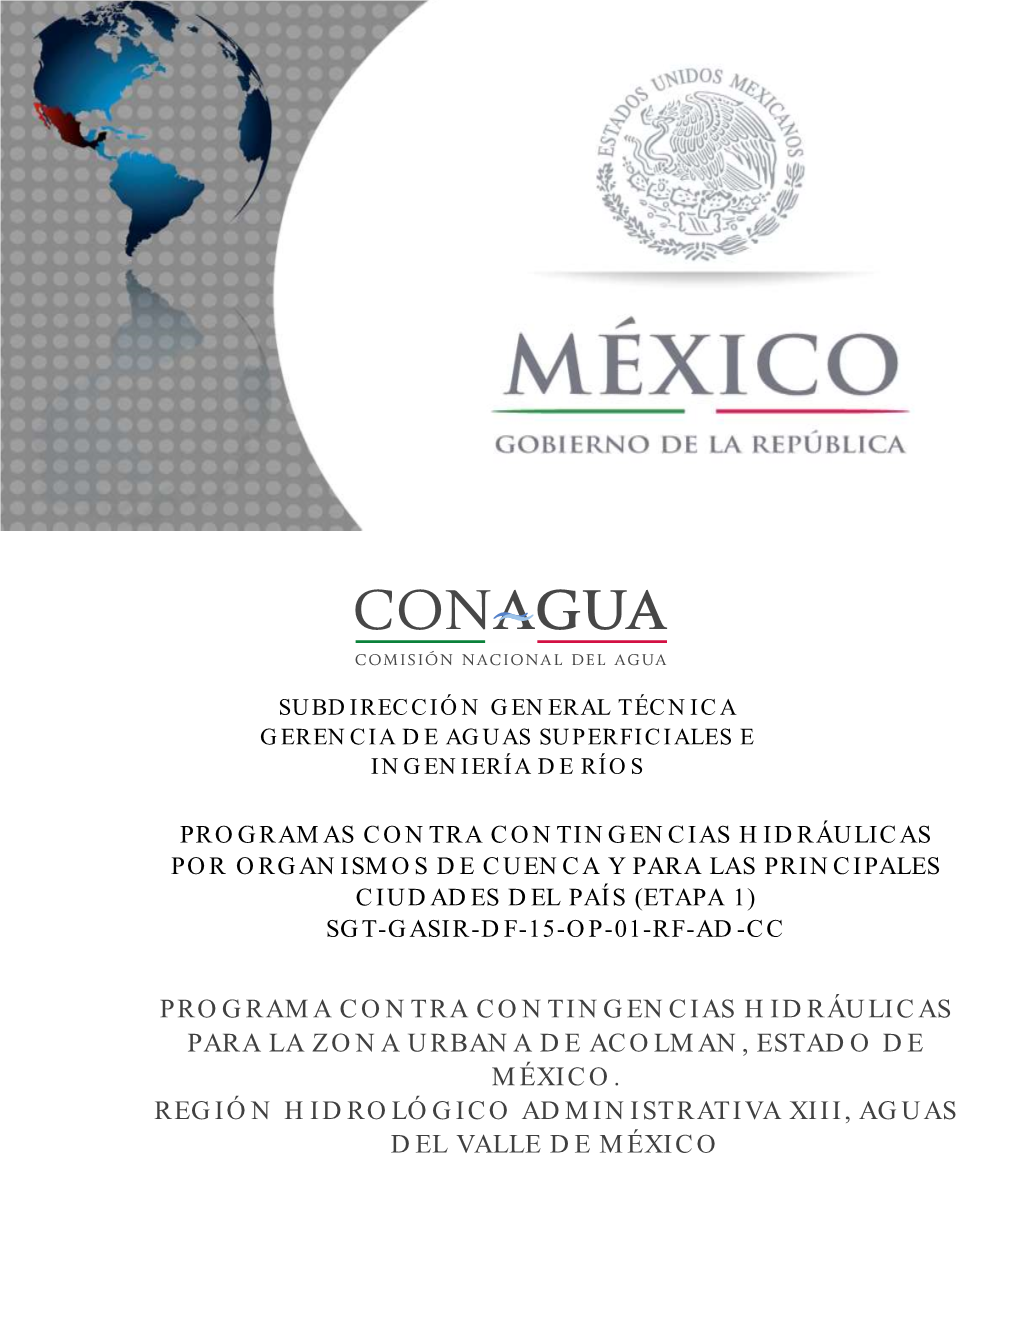 Programa Contra Contingencias Hidráulicas Para La Zona Urbana De Acolman, Estado De México. Región Hidrológico Administrativa Xiii, Aguas Del Valle De México